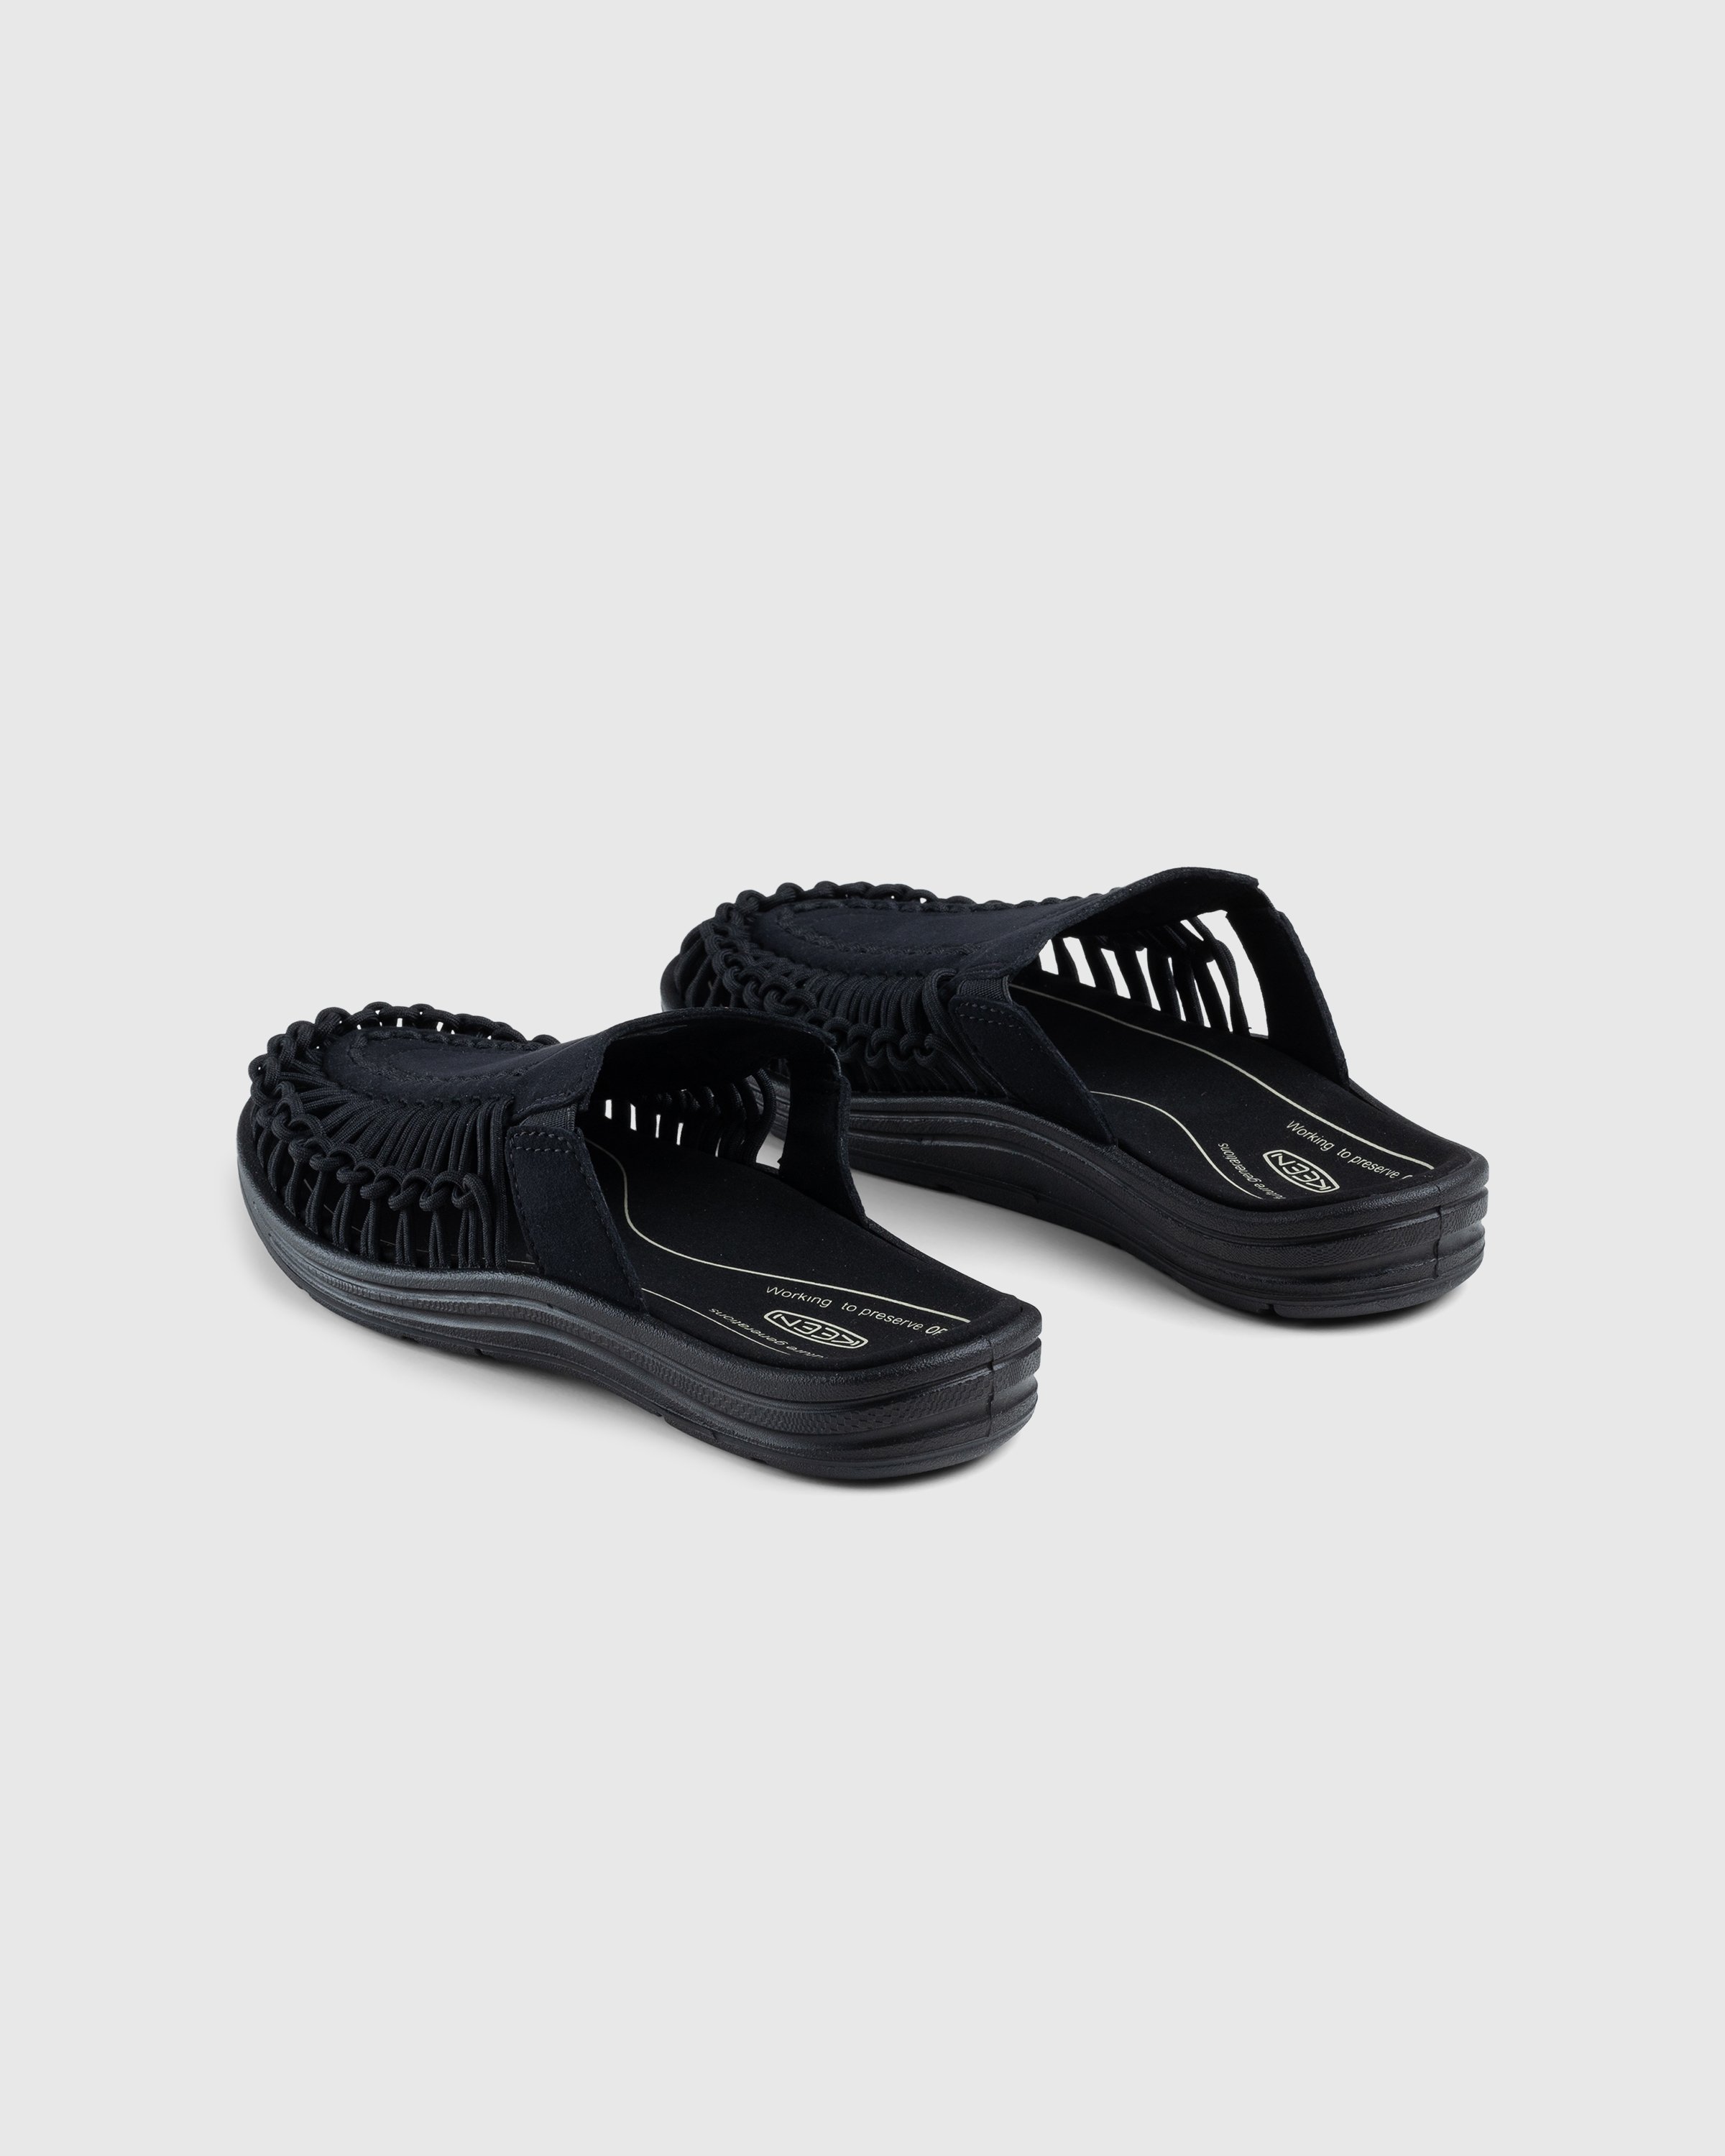 Keen - Uneek II Slide Black - Footwear - Black - Image 4